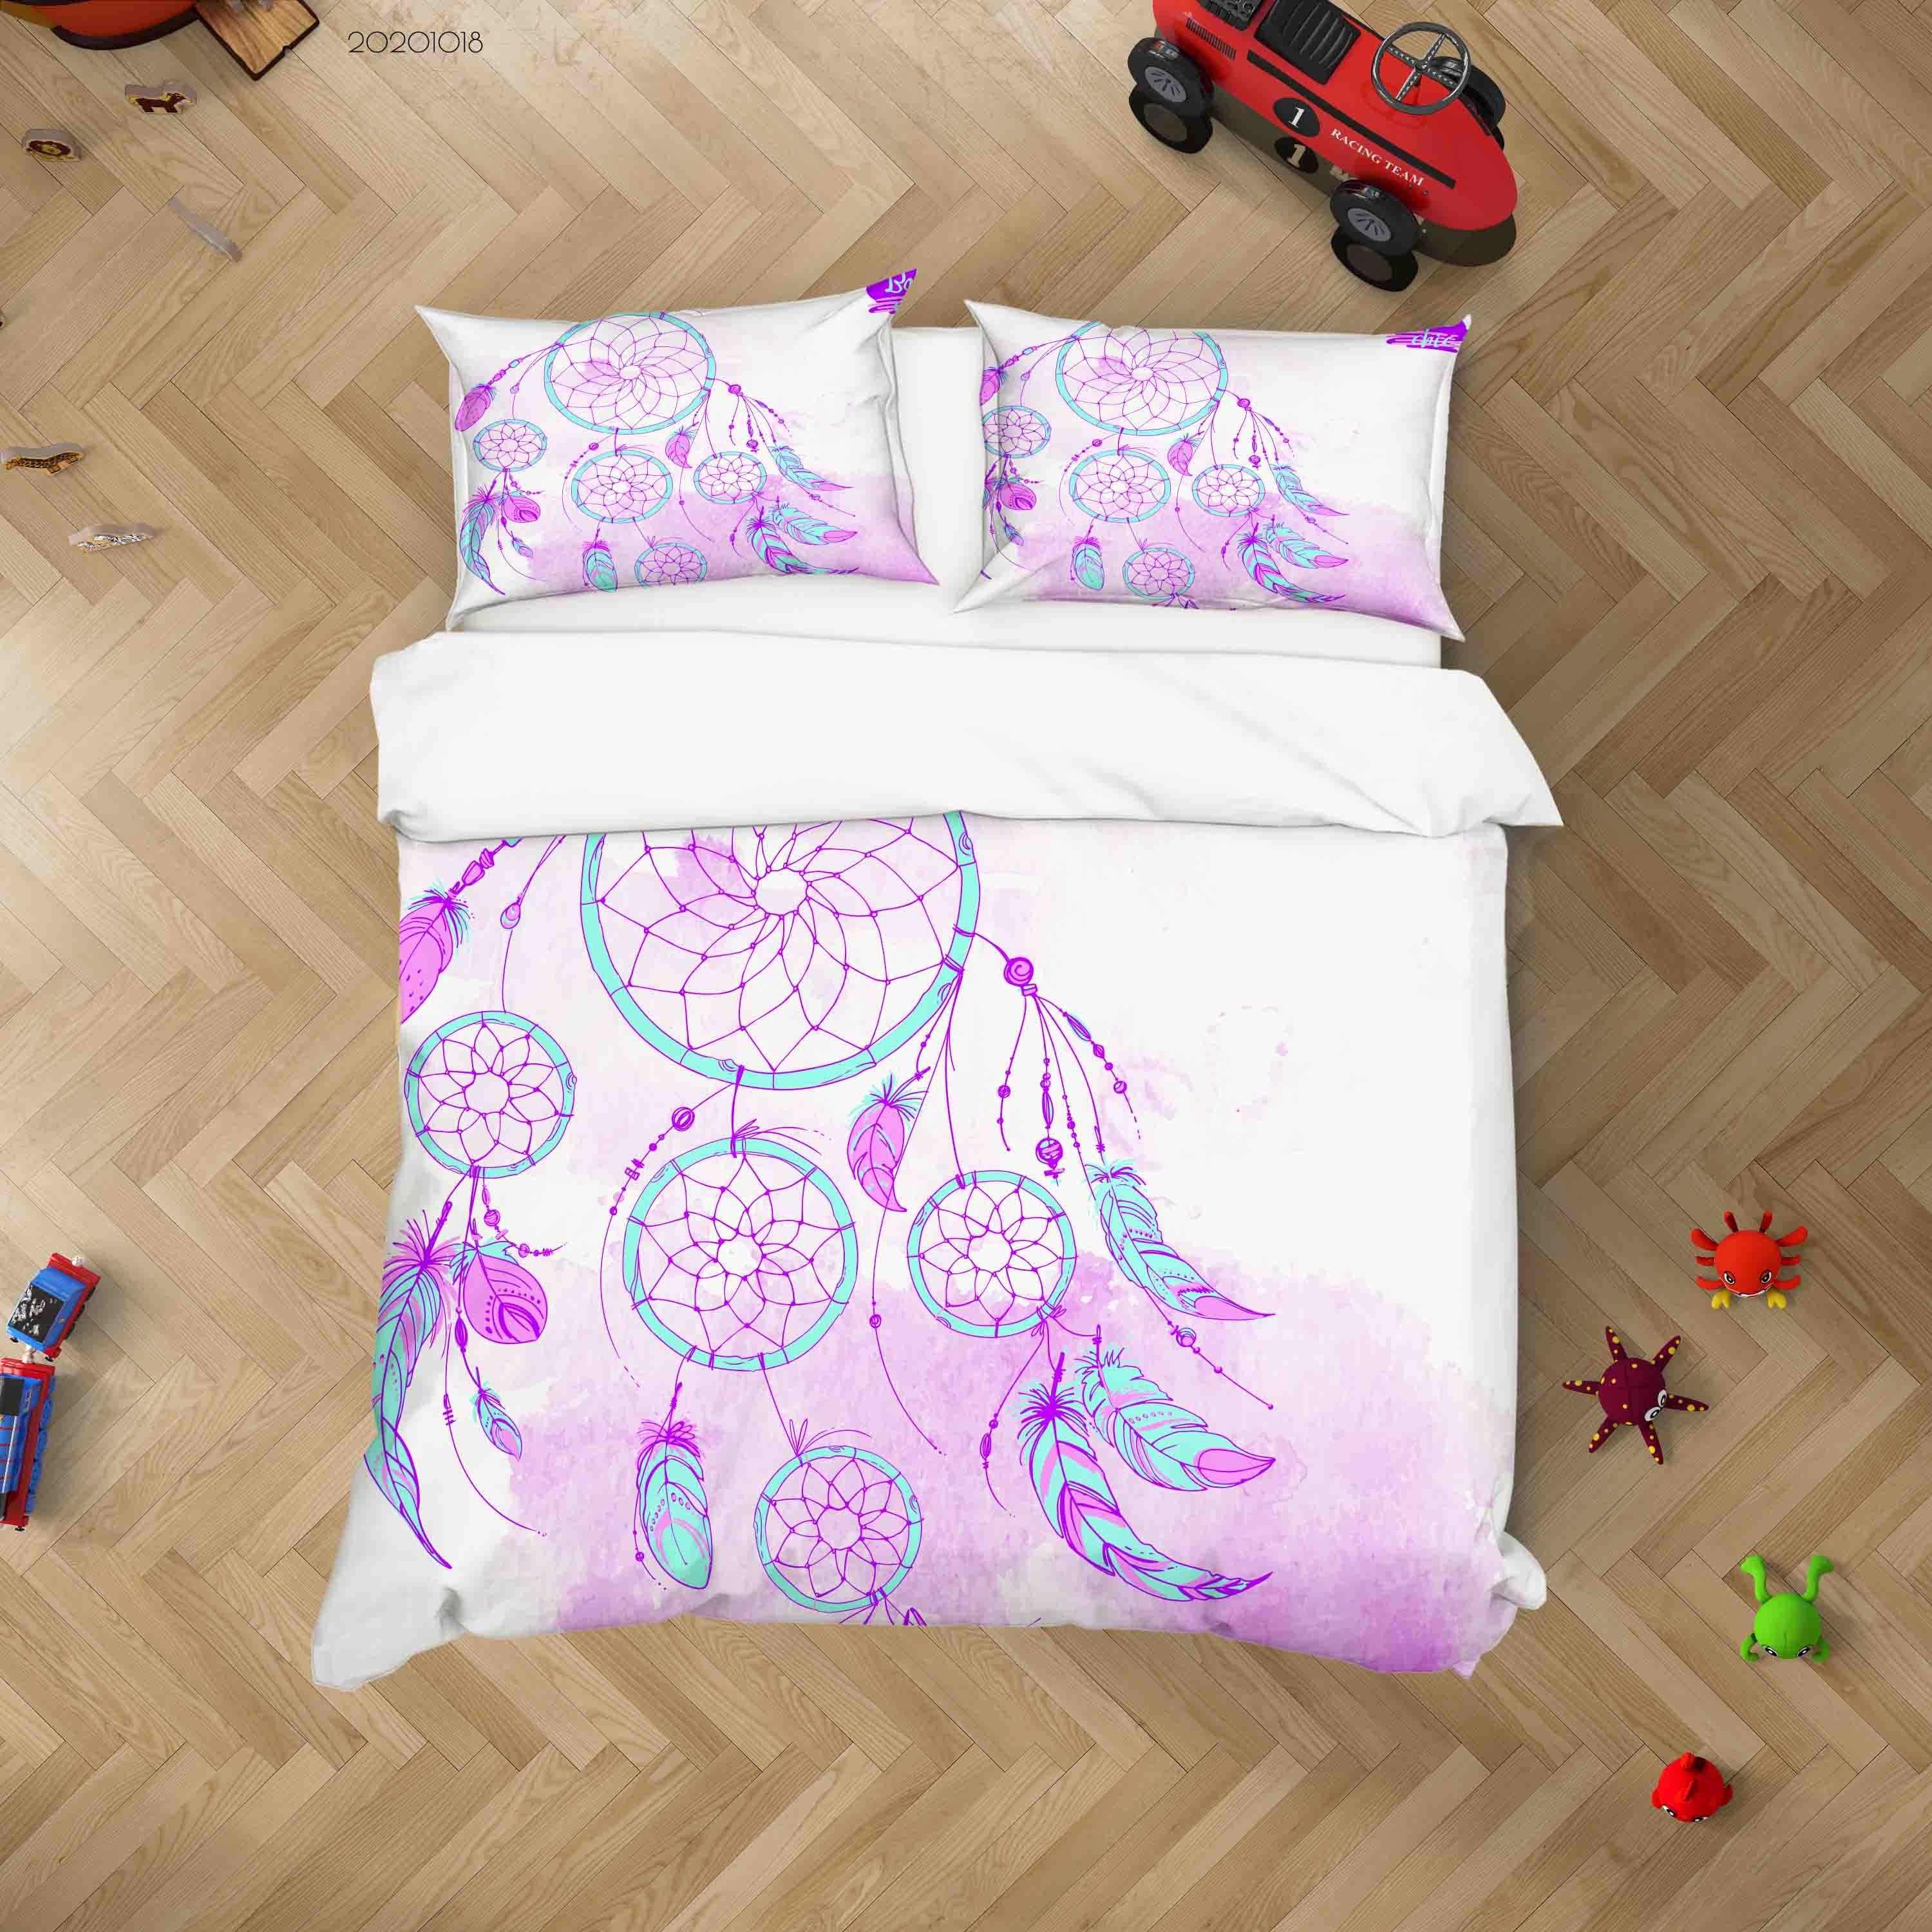 3D Watercolor Dream Catcher Quilt Cover Set Bedding Set Duvet Cover Pillowcases WJ 9742- Jess Art Decoration